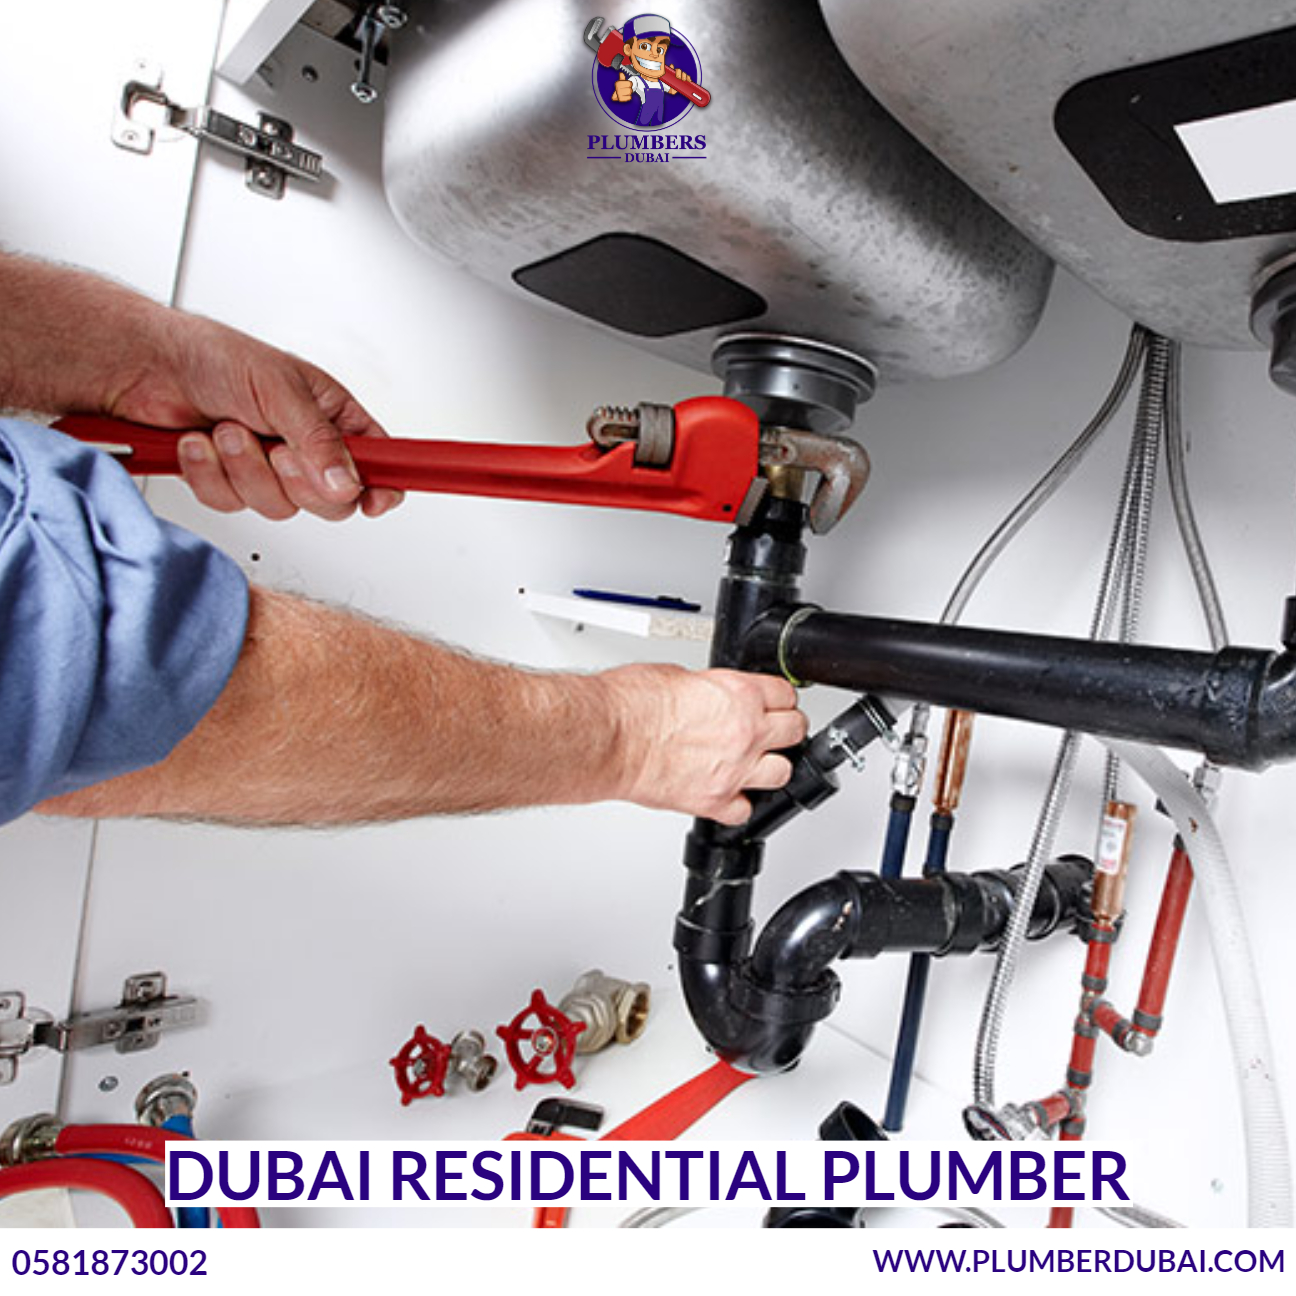 Dubai residential plumber